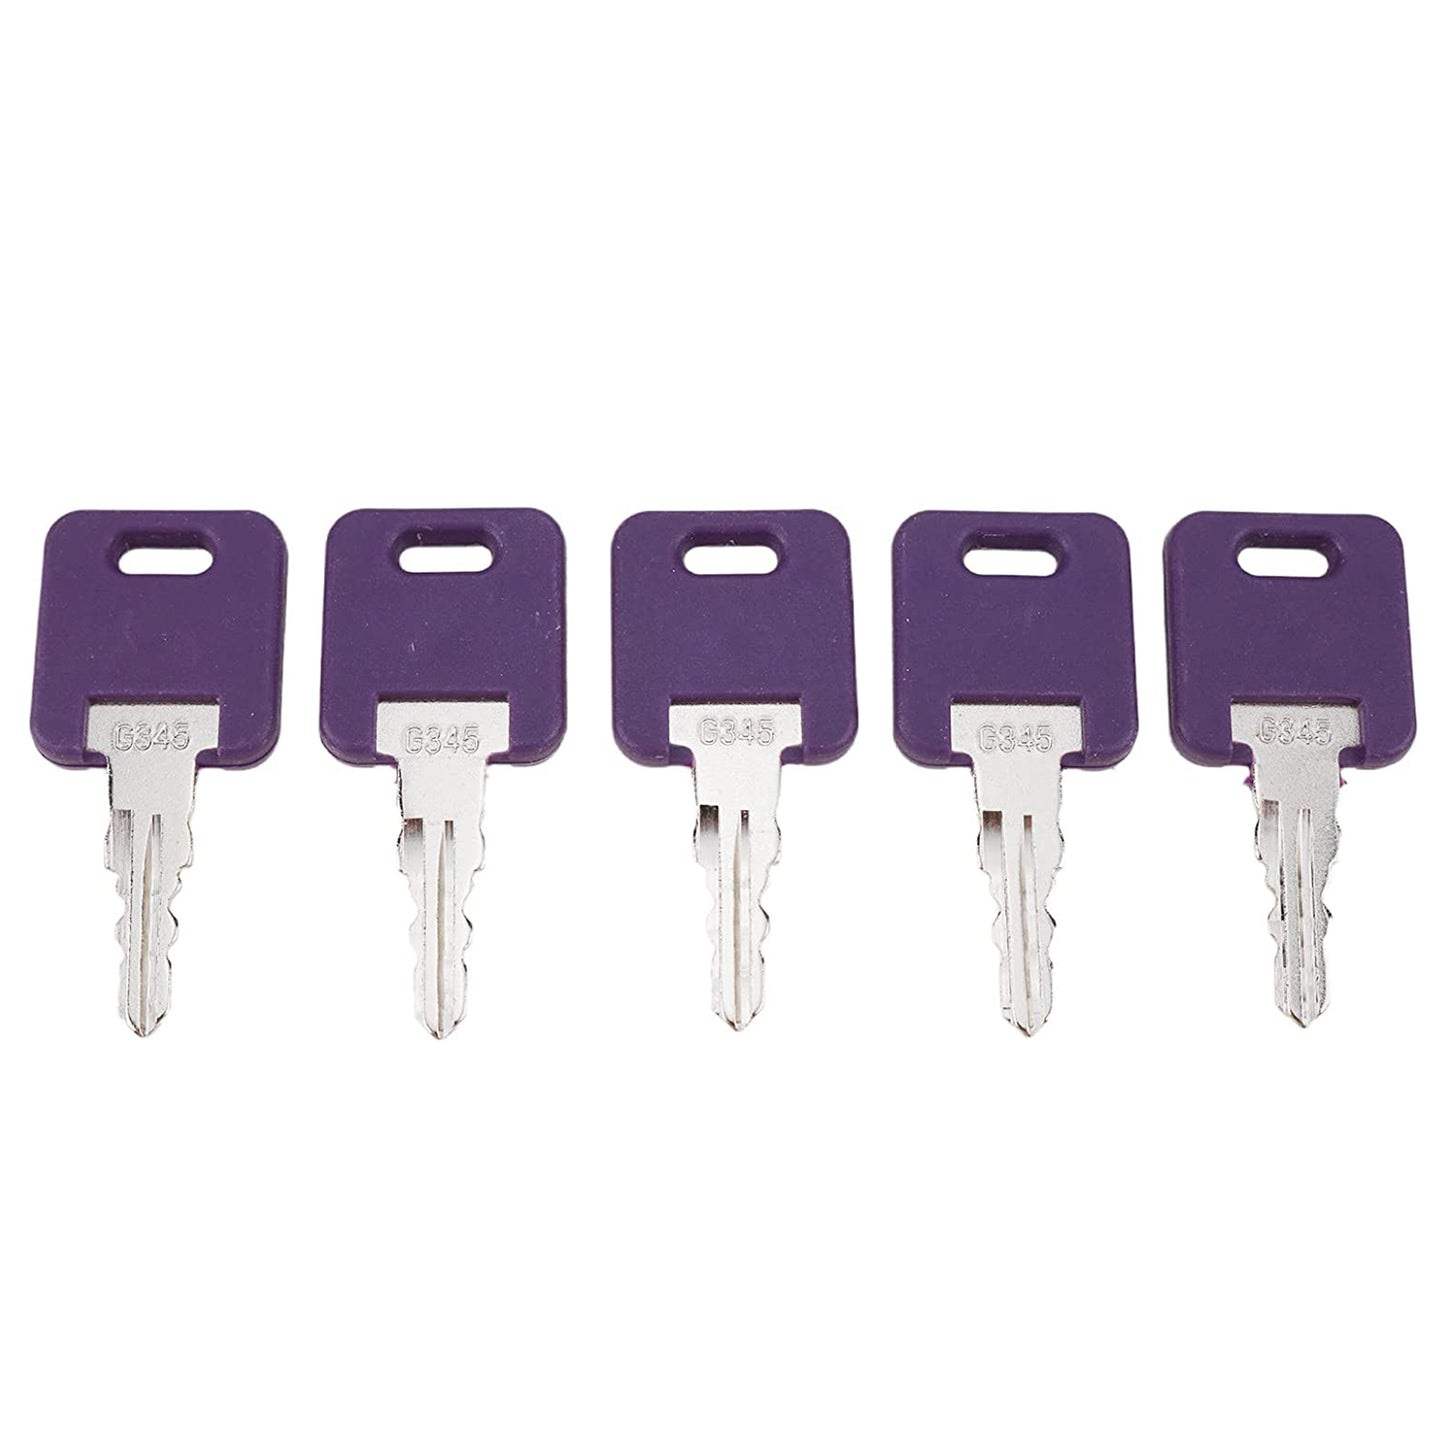 10X #345 G345 013-690345 RV Camper Keys Key Compatible with Global Link RV Trailer Camper Keys